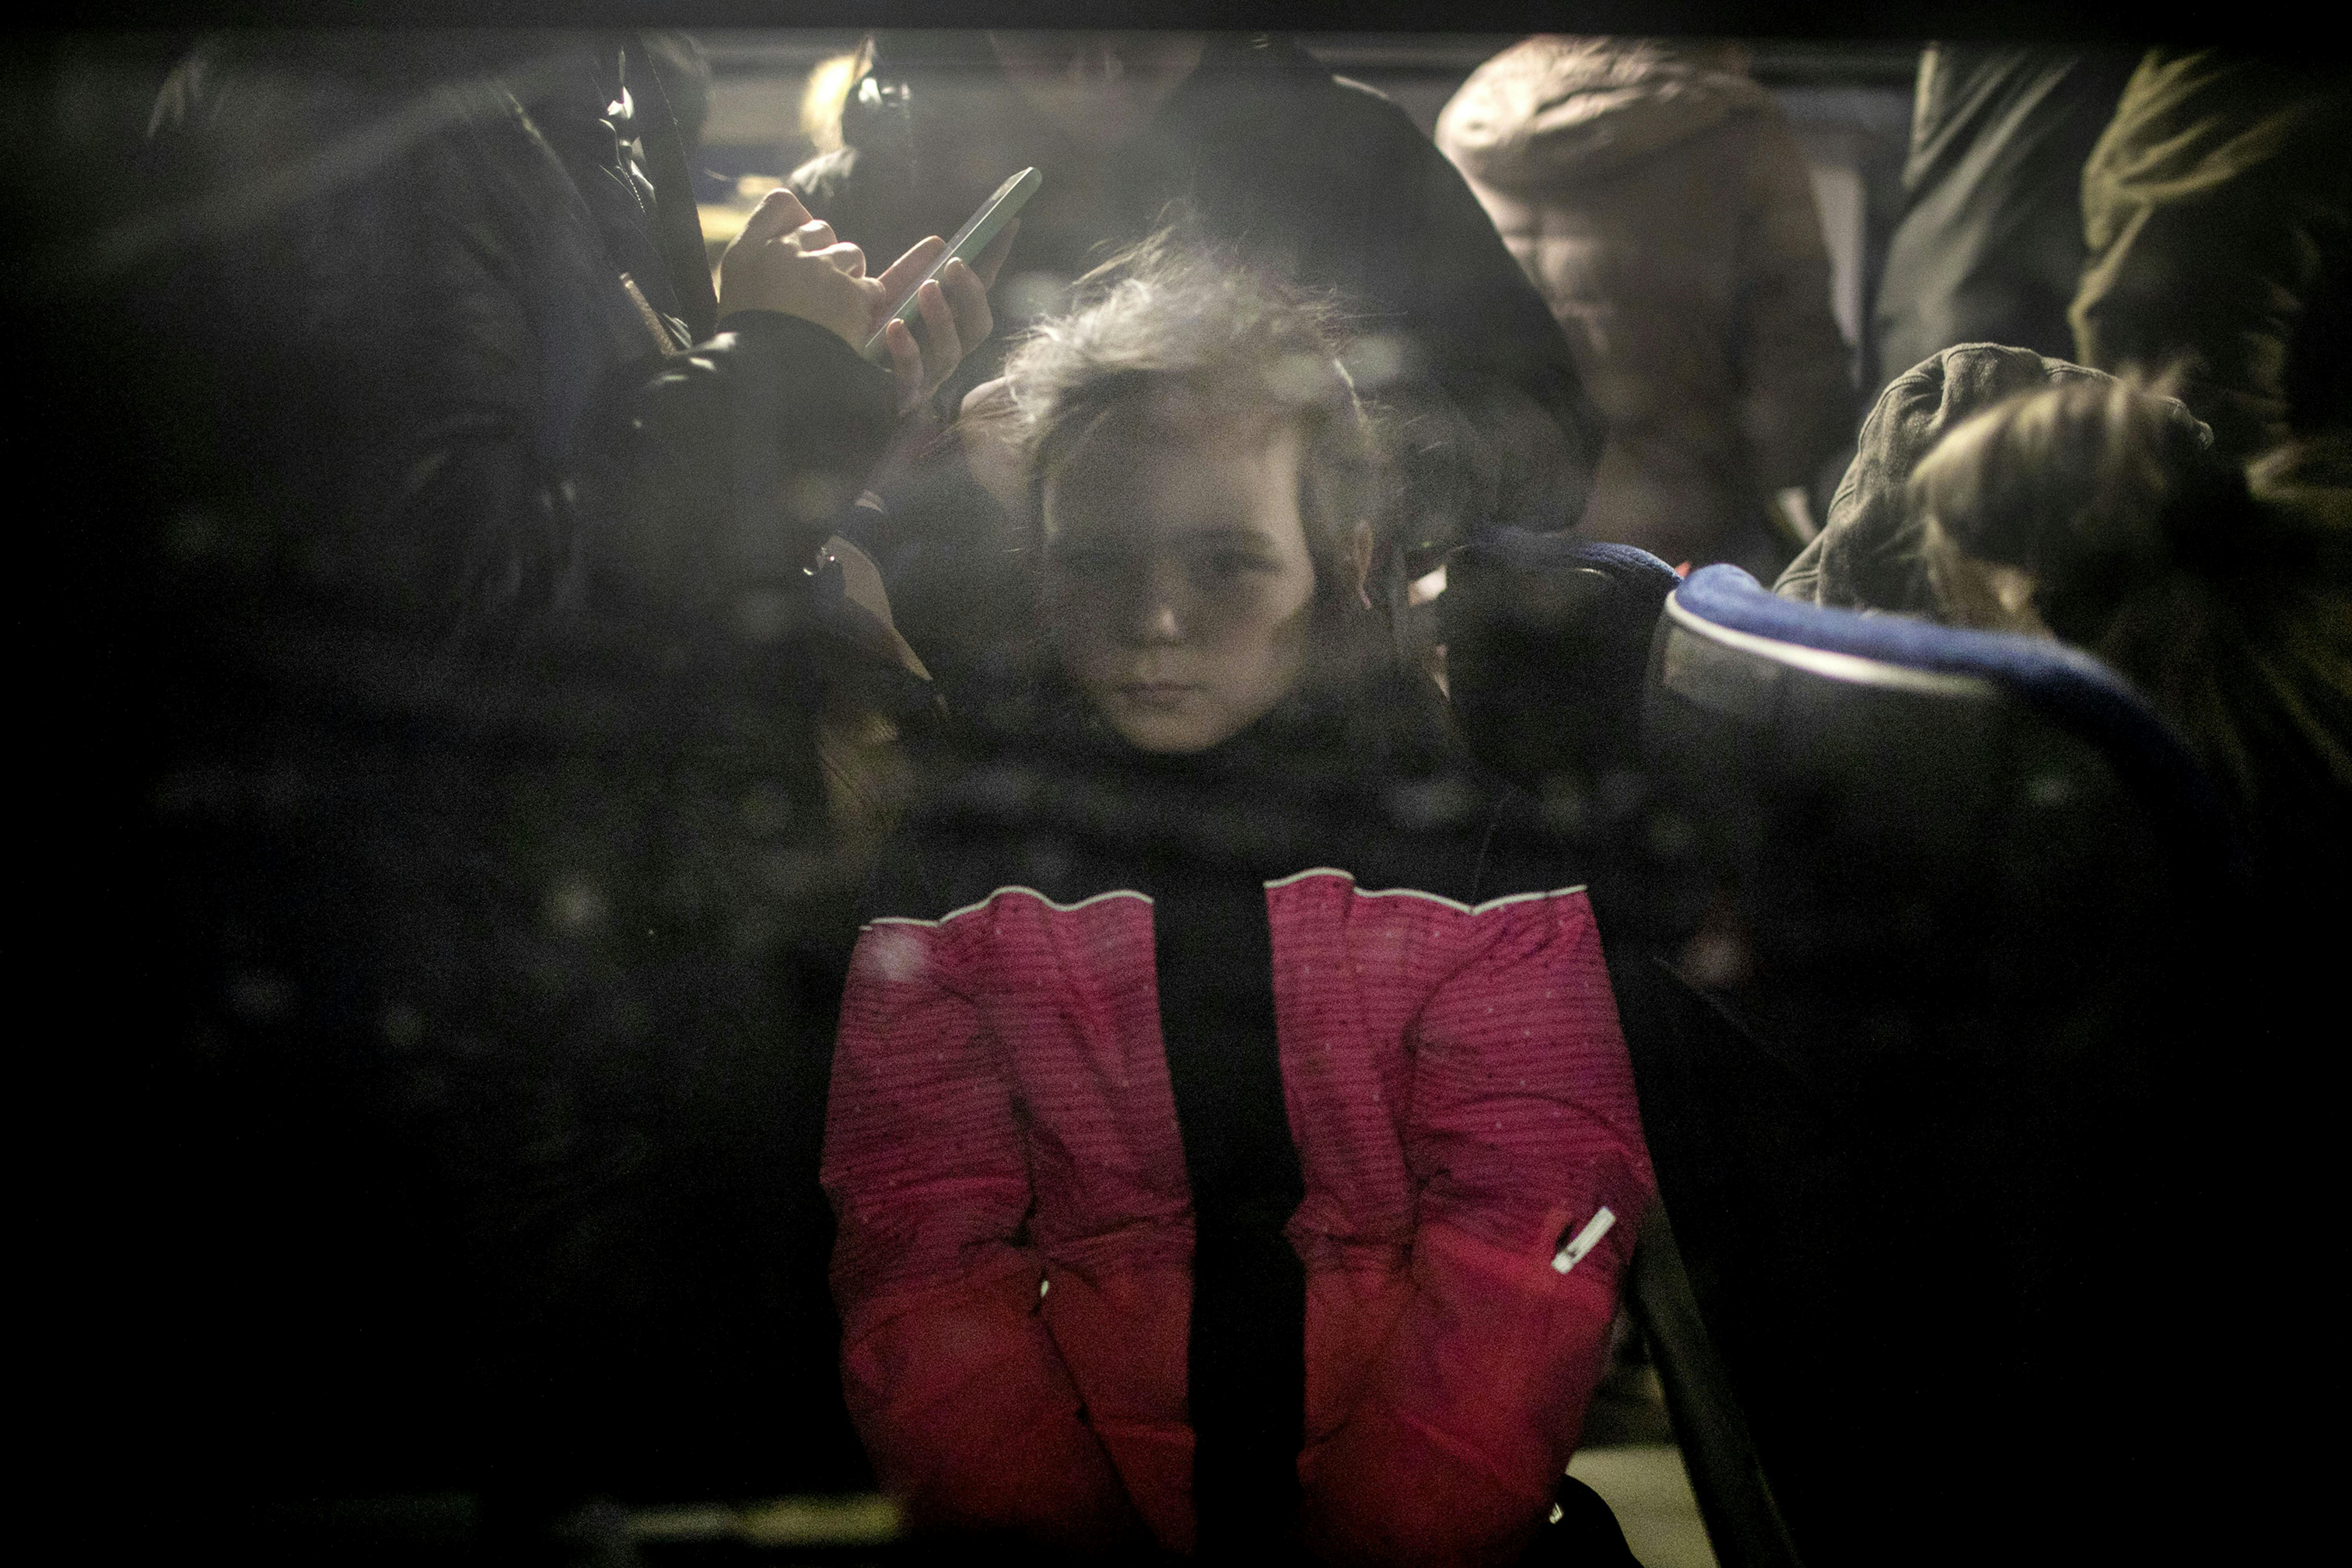 © Amnon Gutman, Romania - Corri per la tua vita: nello sguardo di una bambina in giacca a vento, smarrita eppure forte, si vede tutto ciò che la guerra fa ai bambini: in questo caso dell'Ucraina